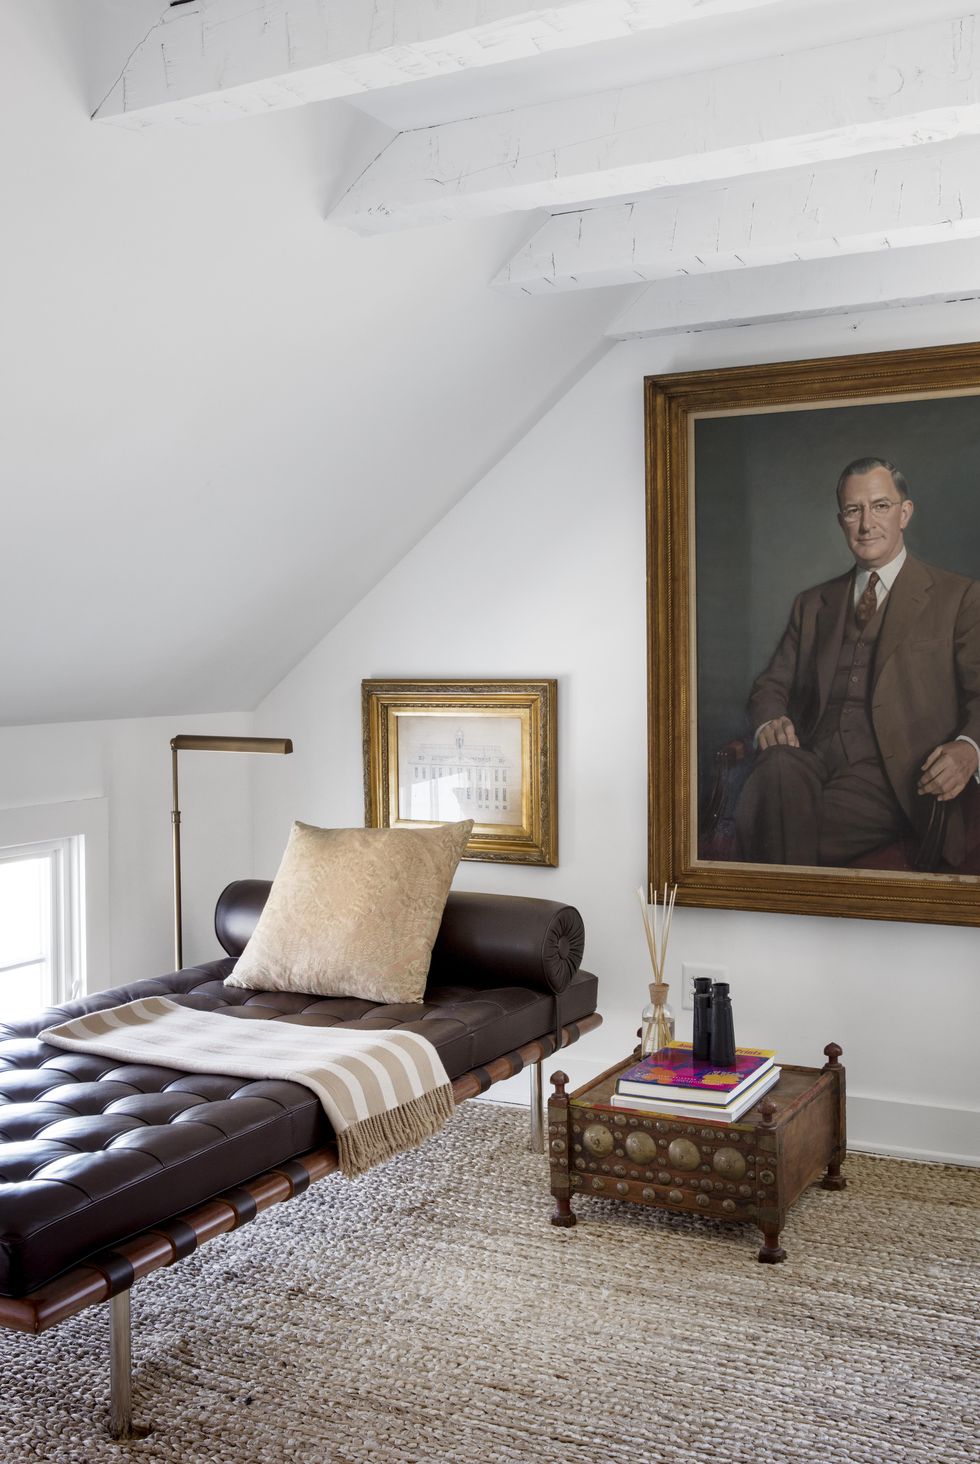 hình ảnh phòng khách tầng áp mái với tường và trần sơn trắng, sofa giường bọc da màu đen, cạnh đó là bàn phụ, tranh chân dung cỡ lớn treo tường